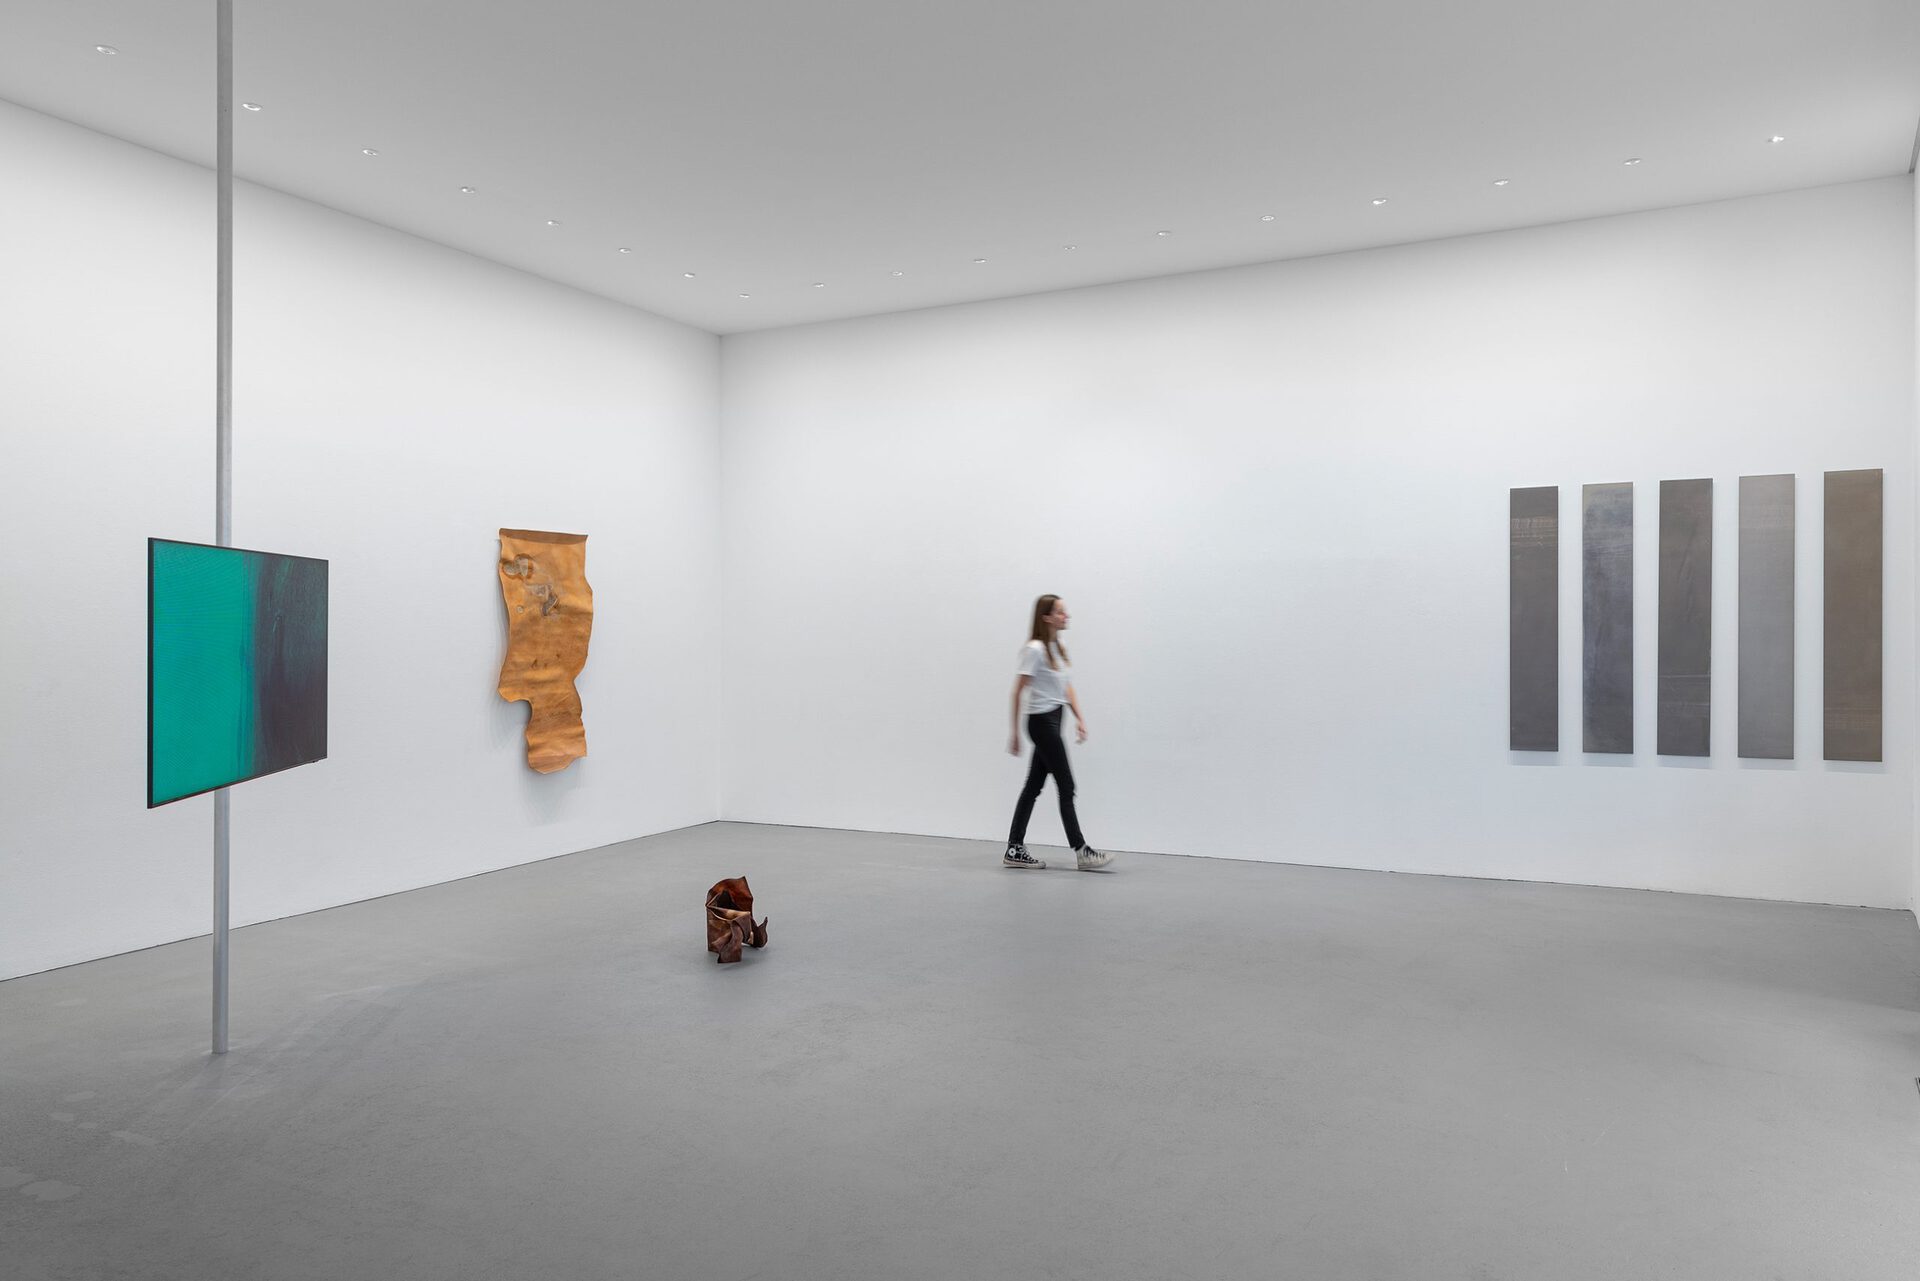 Troika, Rindon Johnson, Liz Deschenes, under the sun, exhibition view, 2022